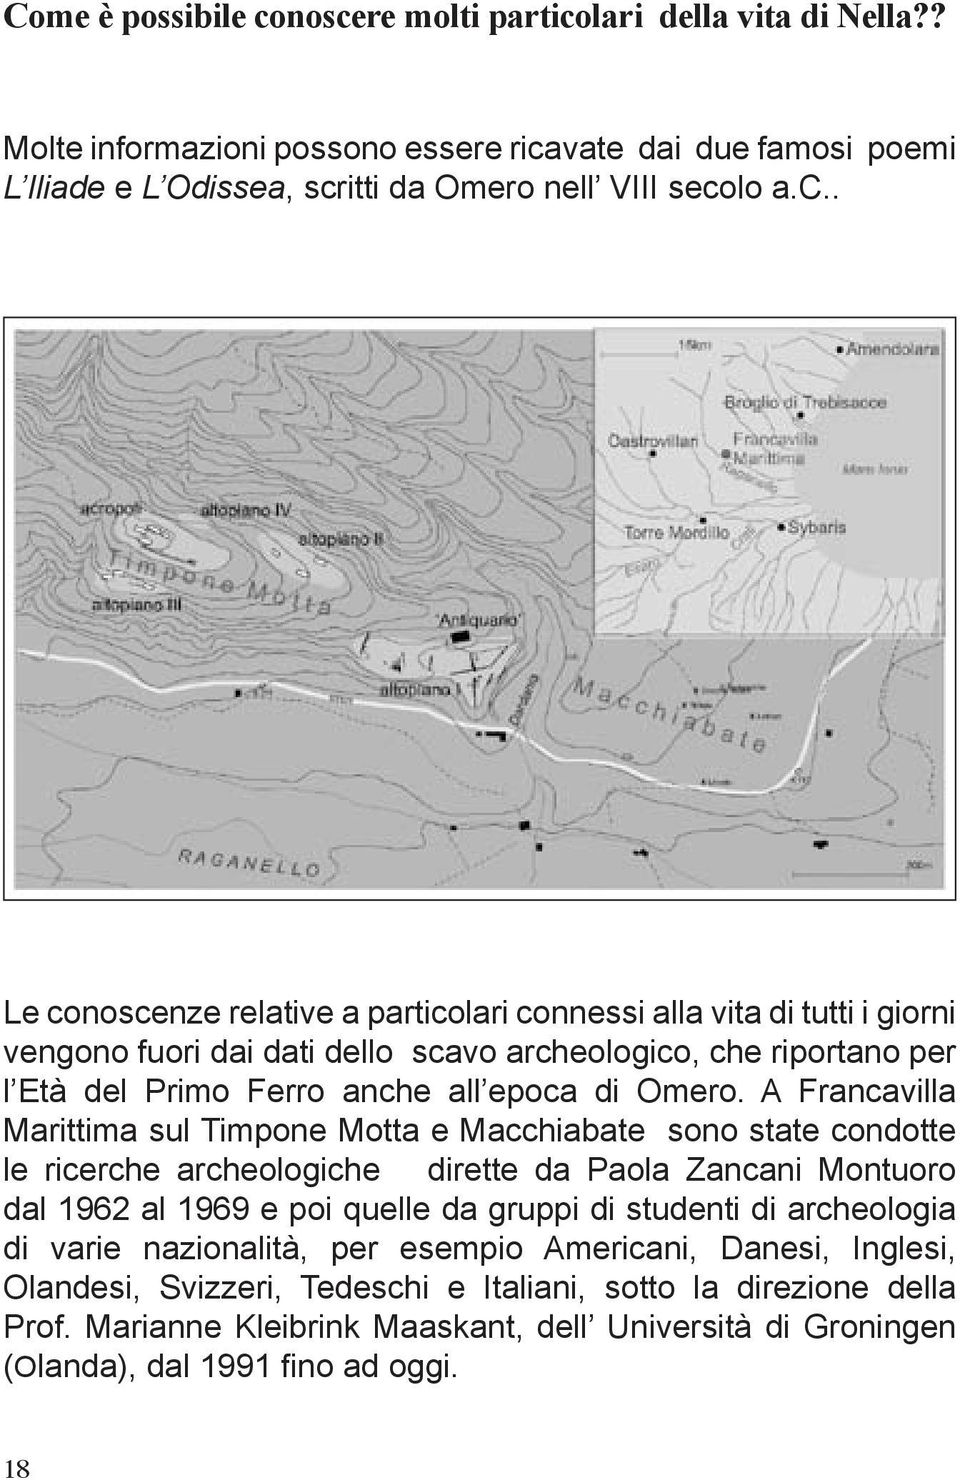 A Francavilla Marittima sul Timpone Motta e Macchiabate sono state condotte le ricerche archeologiche dirette da Paola Zancani Montuoro dal 1962 al 1969 e poi quelle da gruppi di studenti di